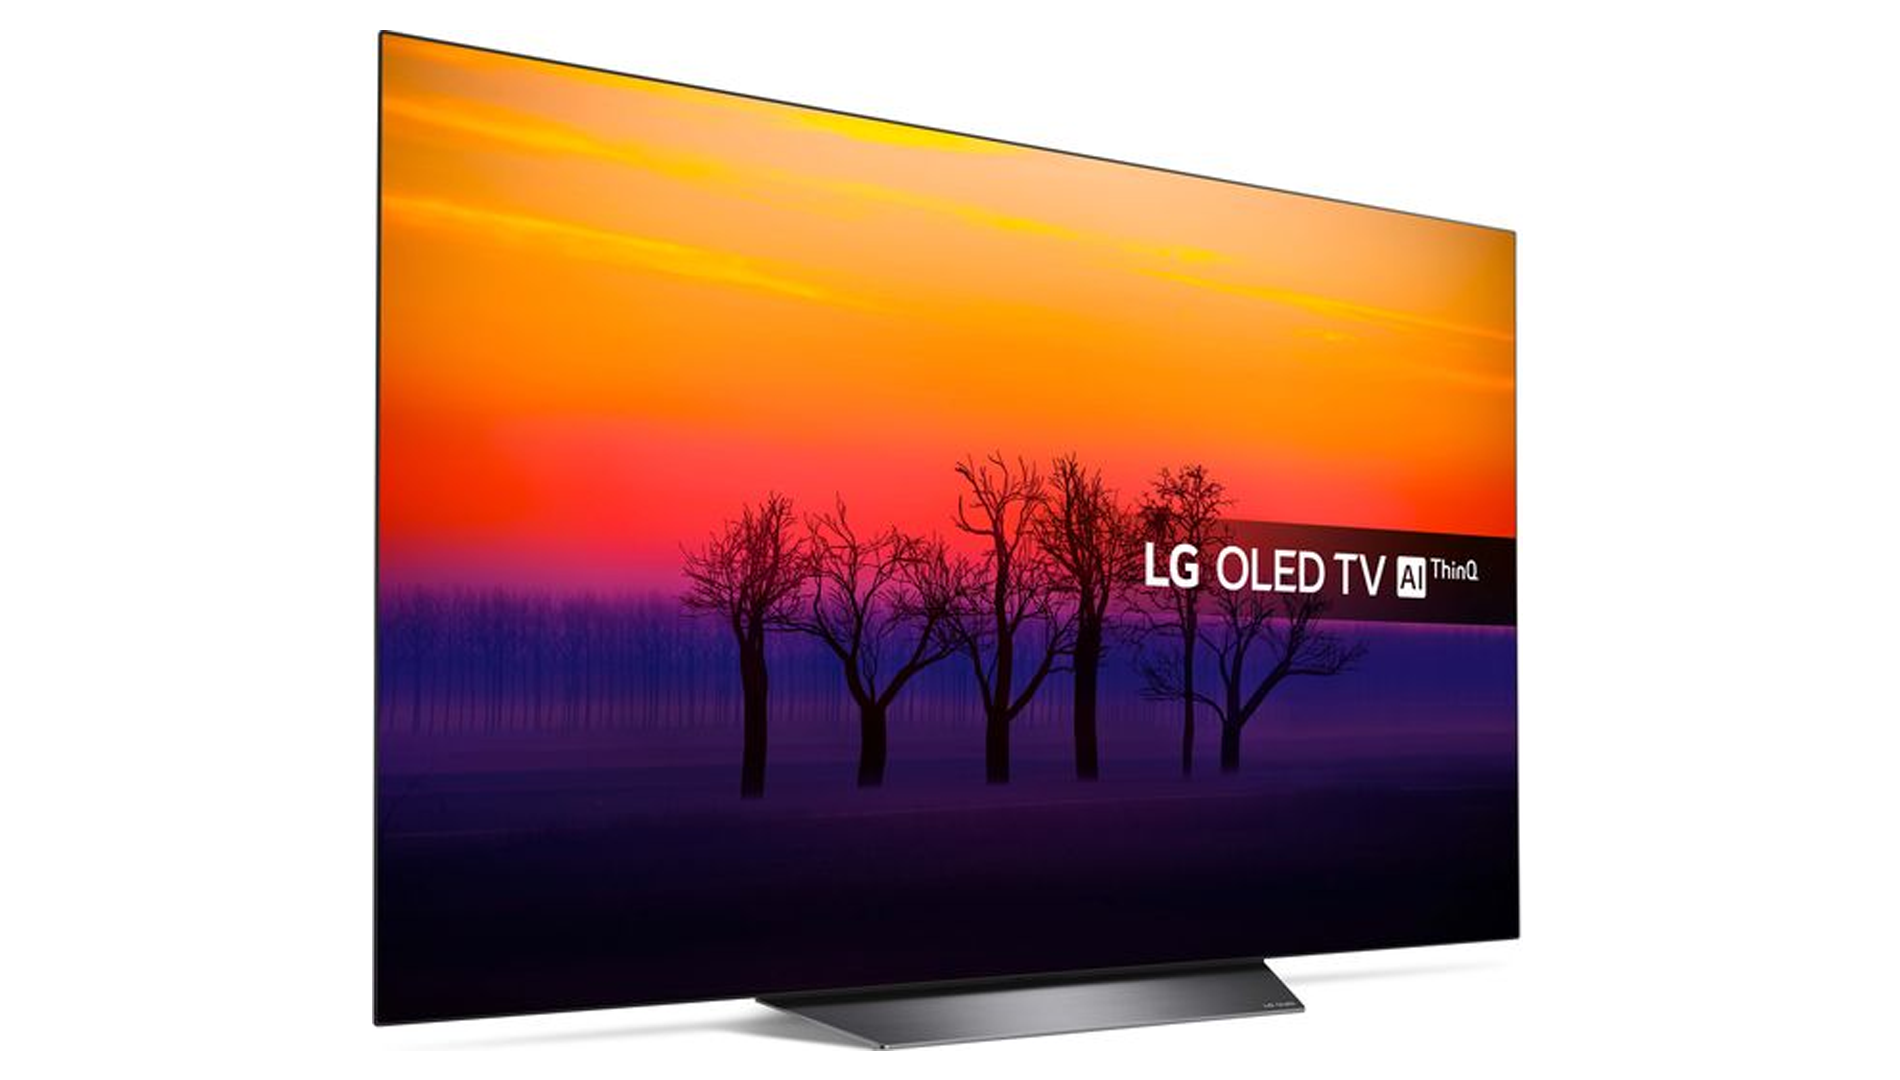 LG oled55b8pla. Телевизор Haier 55 OLED s9 Ultra. Телевизор LG OLED 2013. LG OLED 2012.